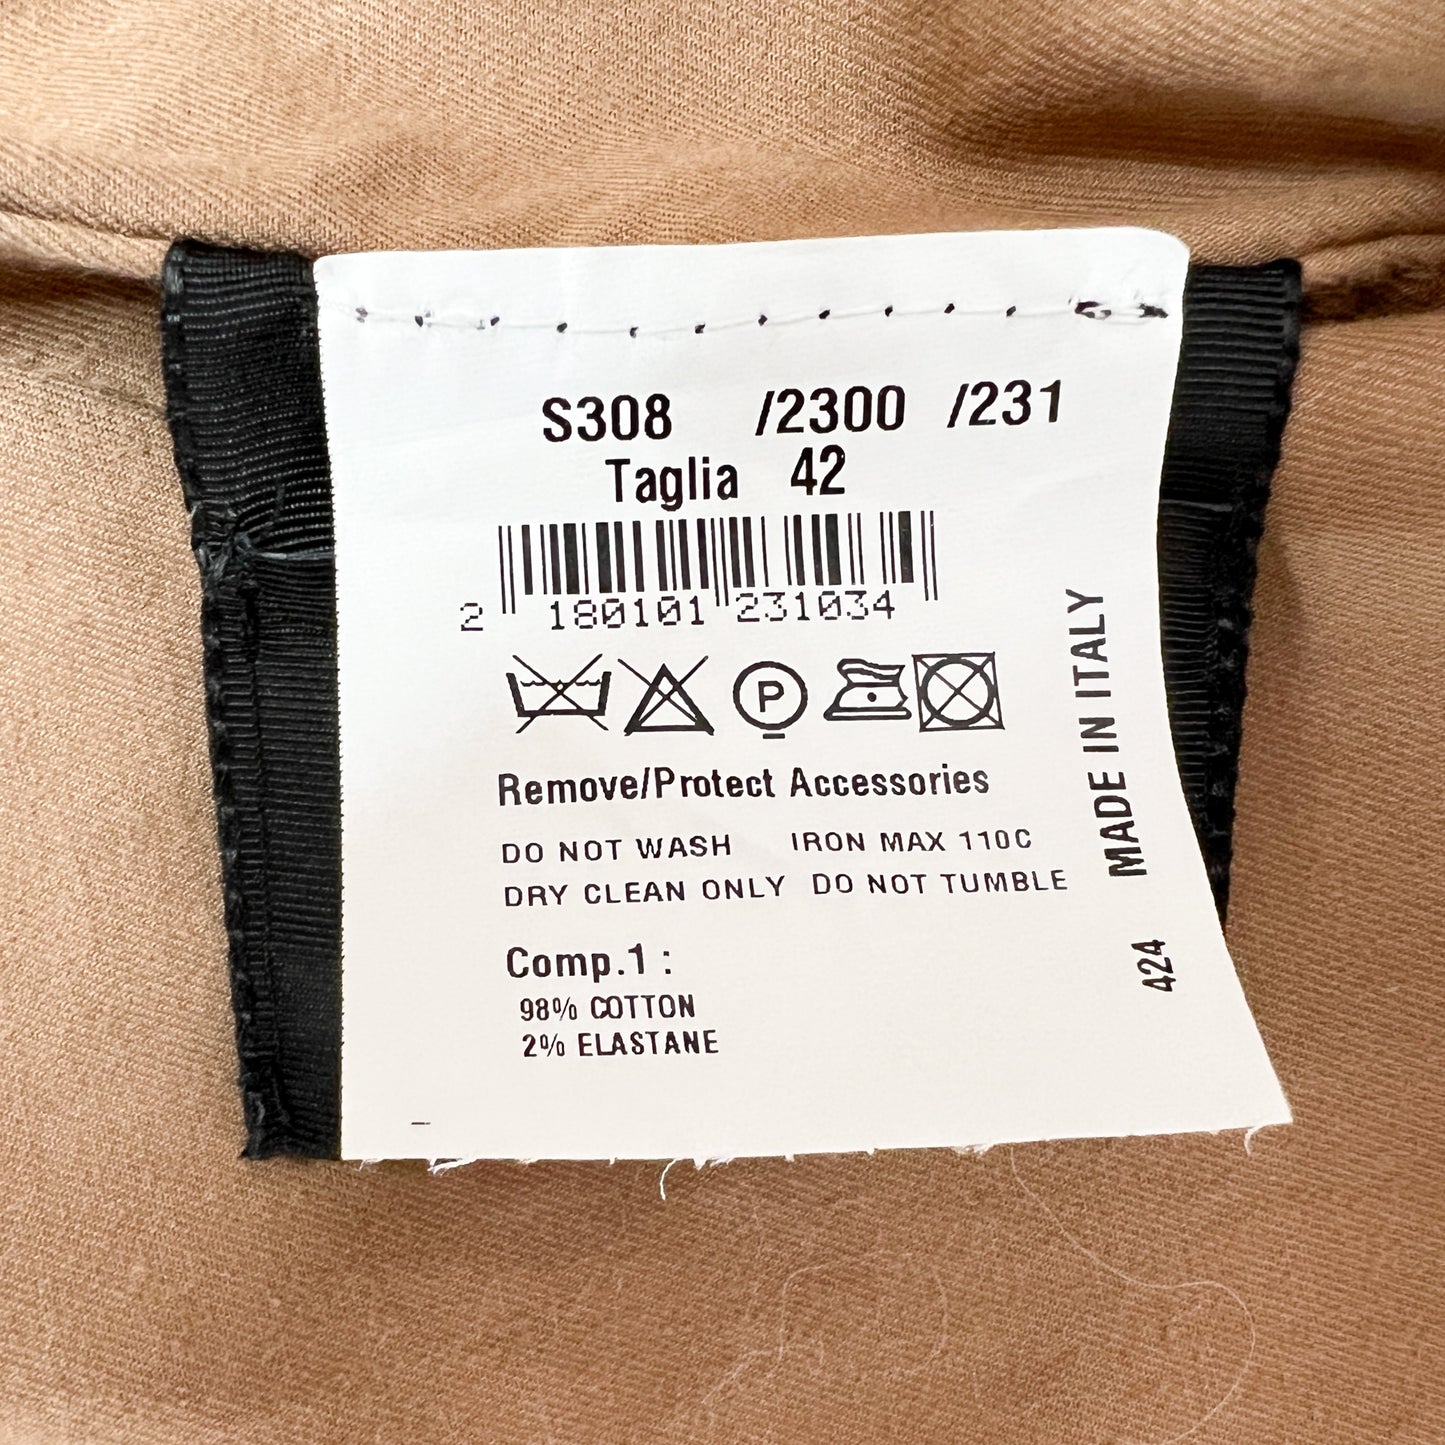 Bazar Deluxe Brown Cotton Wrap Coat & Woven Belt IT42 ~ AU10-12